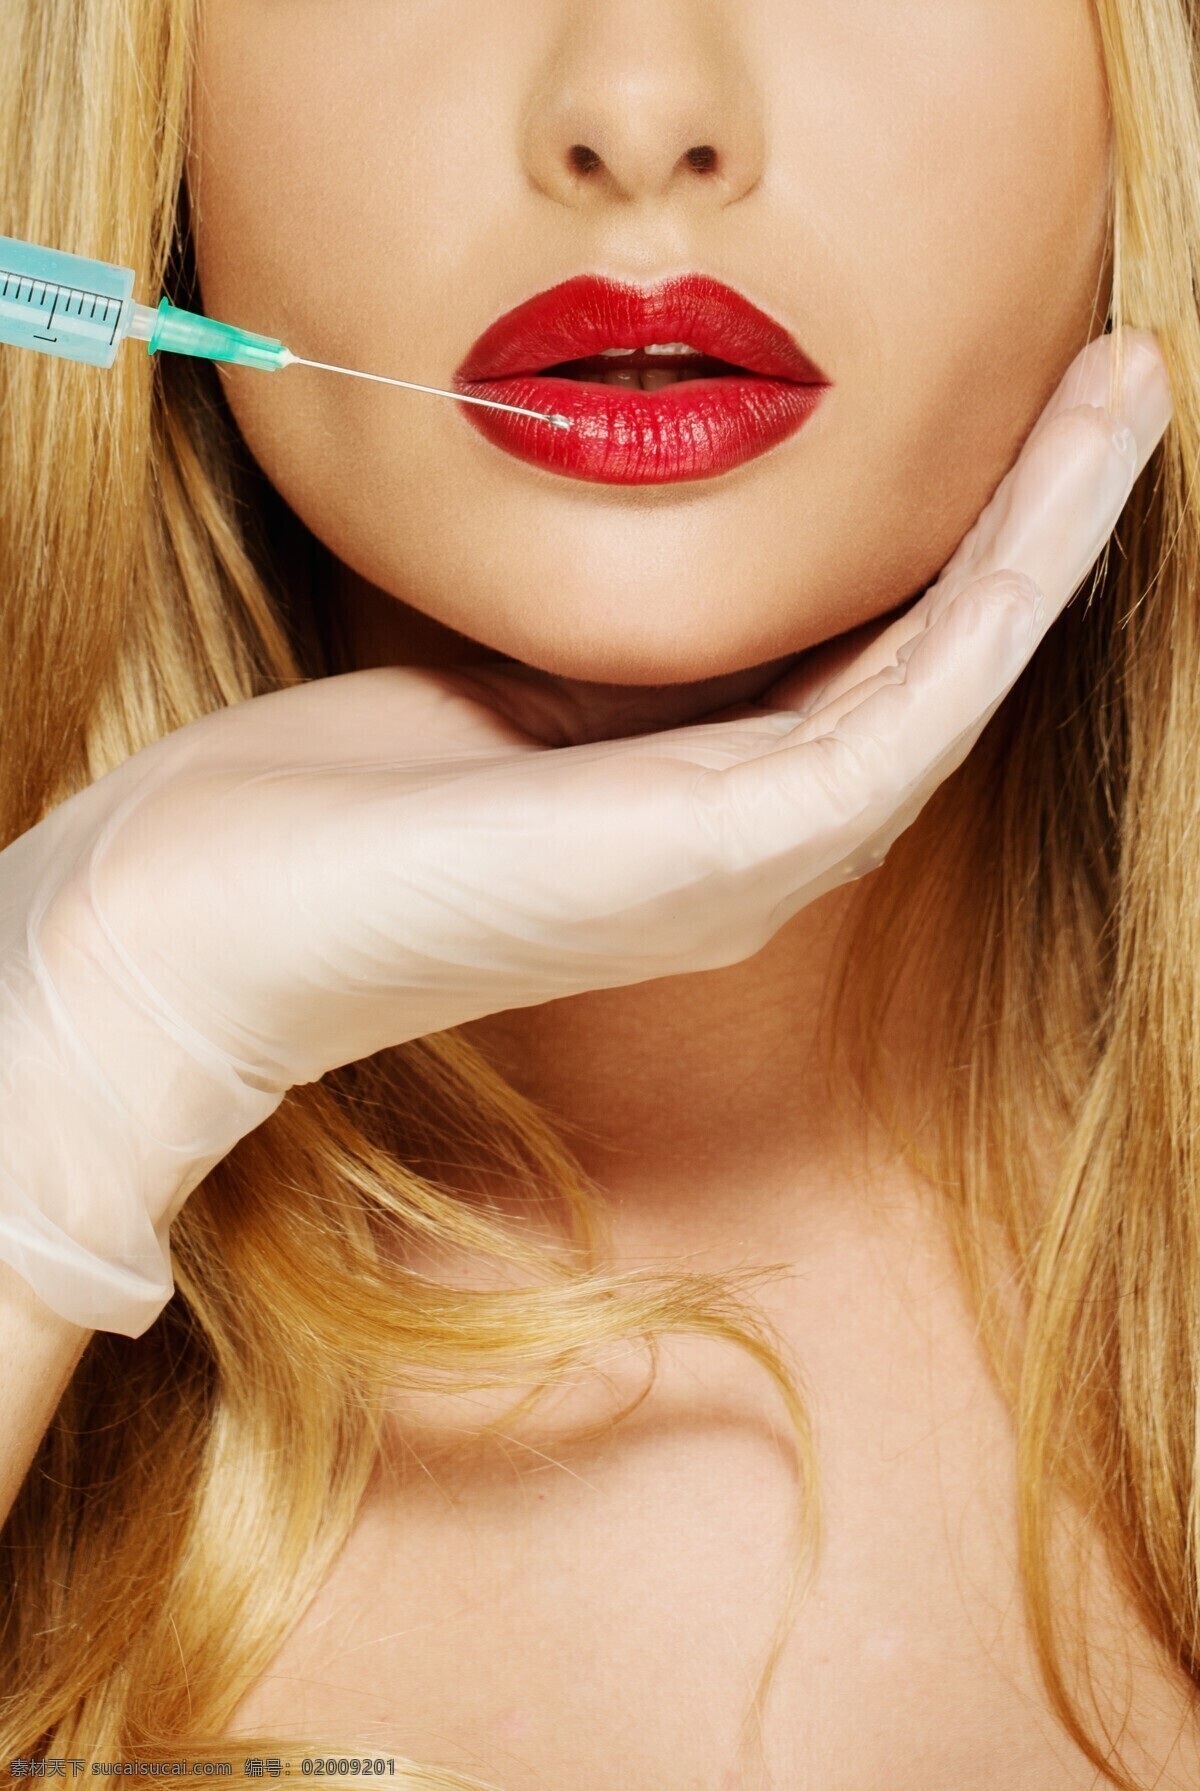 整形 唇部 美女图片 美女 红唇 整形工具 整形美容 美容美体 瘦身美容 性感美女 金发美女 医疗护理 现代科技